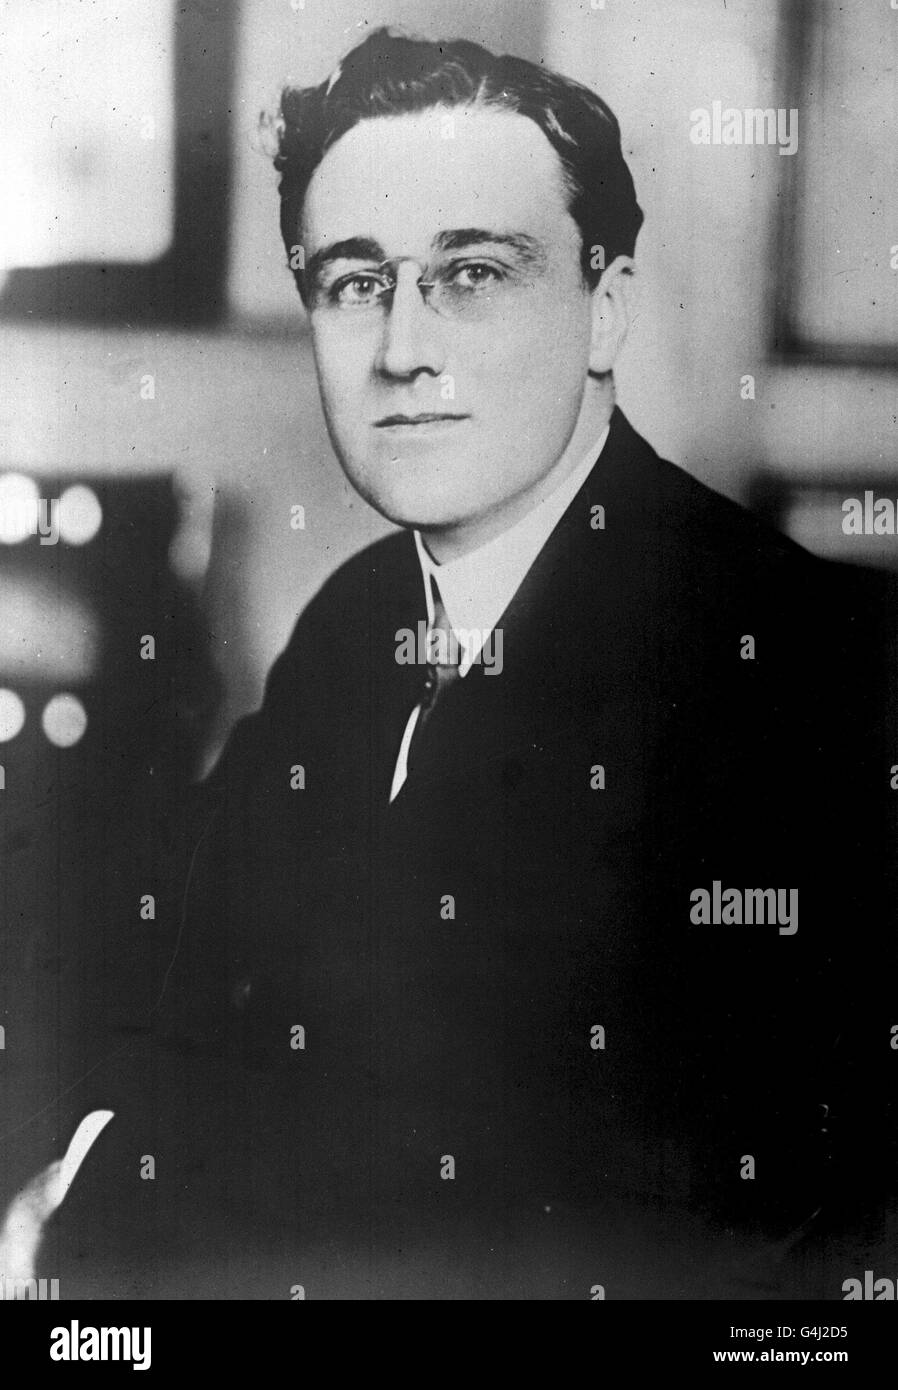 08/11/1932 - AN DIESEM TAG IN DER GESCHICHTE - Franklin Delanor Roosevelt wird als Präsident der Vereinigten Staaten installiert. Es ist ein Amt, das er bis zu seinem Tod 1945 17/9/21 halten wird: FRANKLIN D. ROOSEVELT, COUSIN DES VERSTORBENEN Ex-PRÄSIDENTEN UND EHEMALS STELLVERTRETENDER SEKRETÄR DER US-MARINE. Stockfoto